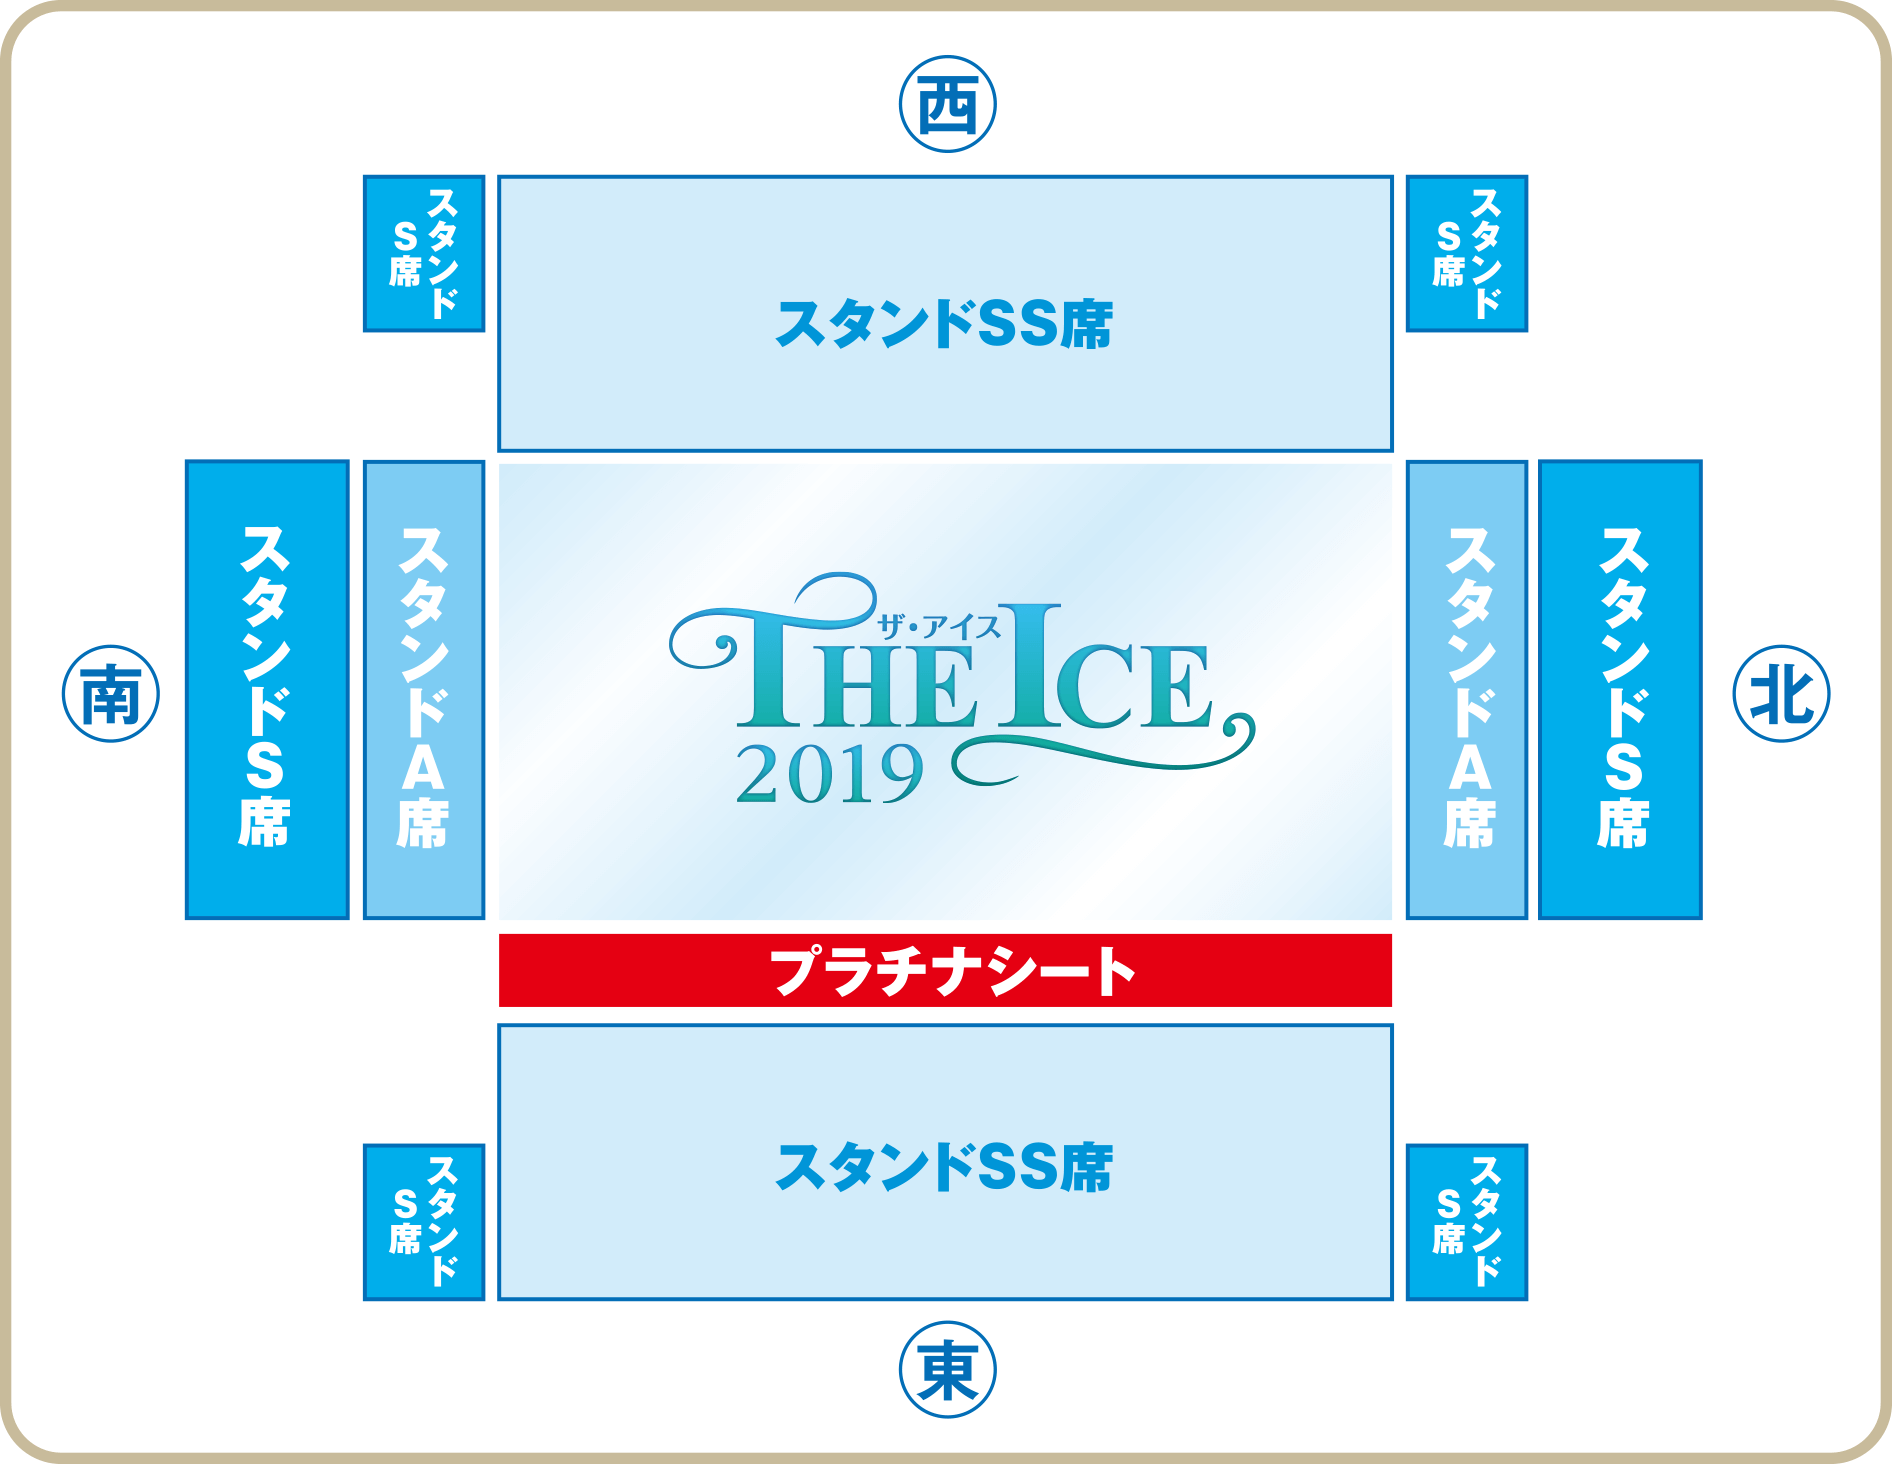 THE ICE 2019